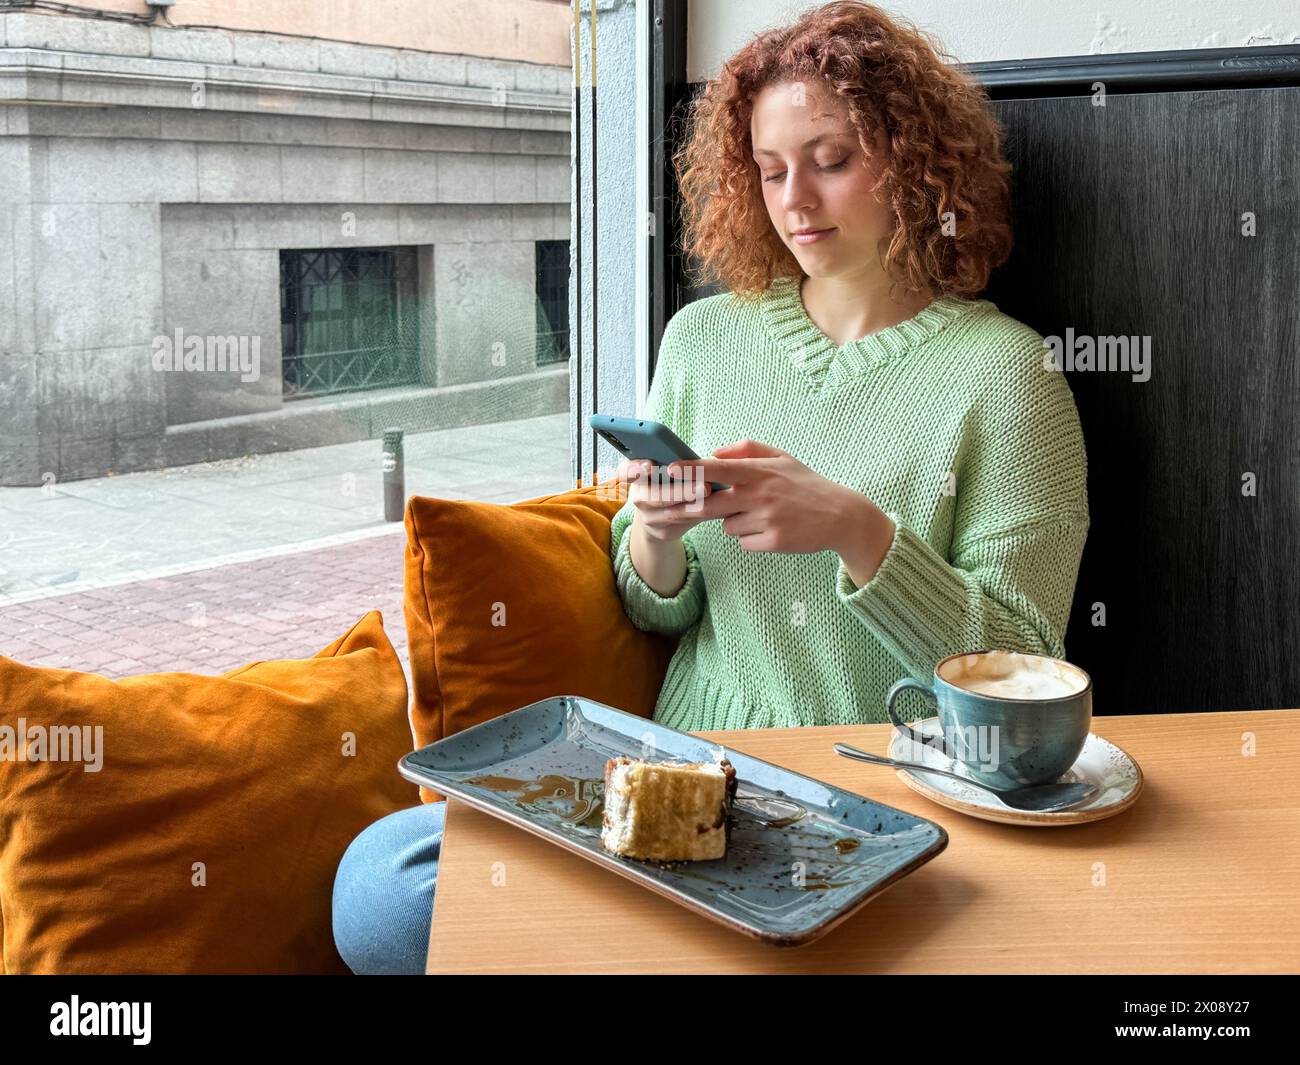 Giovane donna rossa dai capelli ricci seduta a un tavolino vicino a una finestra, usando uno smartphone con una tazza di caffè e una fetta di torta Foto Stock